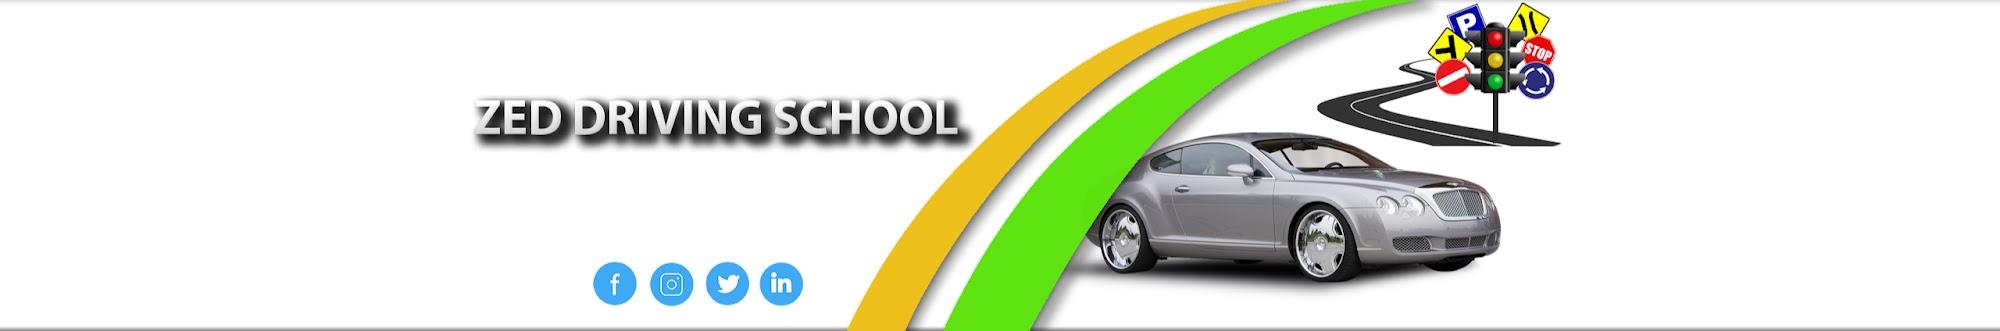 Zed Driving School